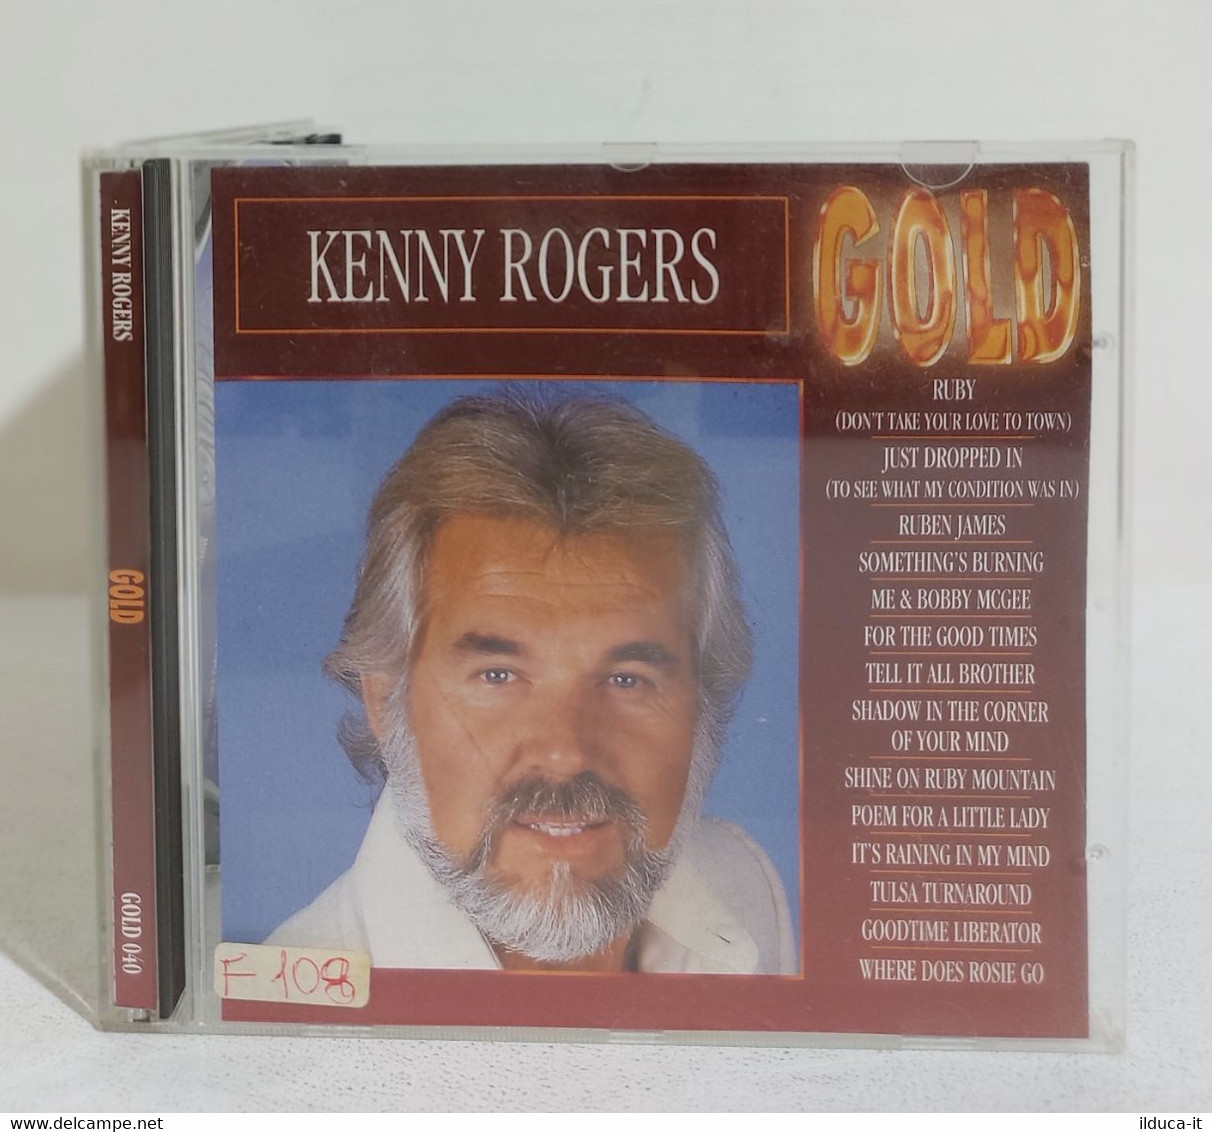 I108150 CD - KENNY ROGERS - Gold - 1993 - Soul - R&B